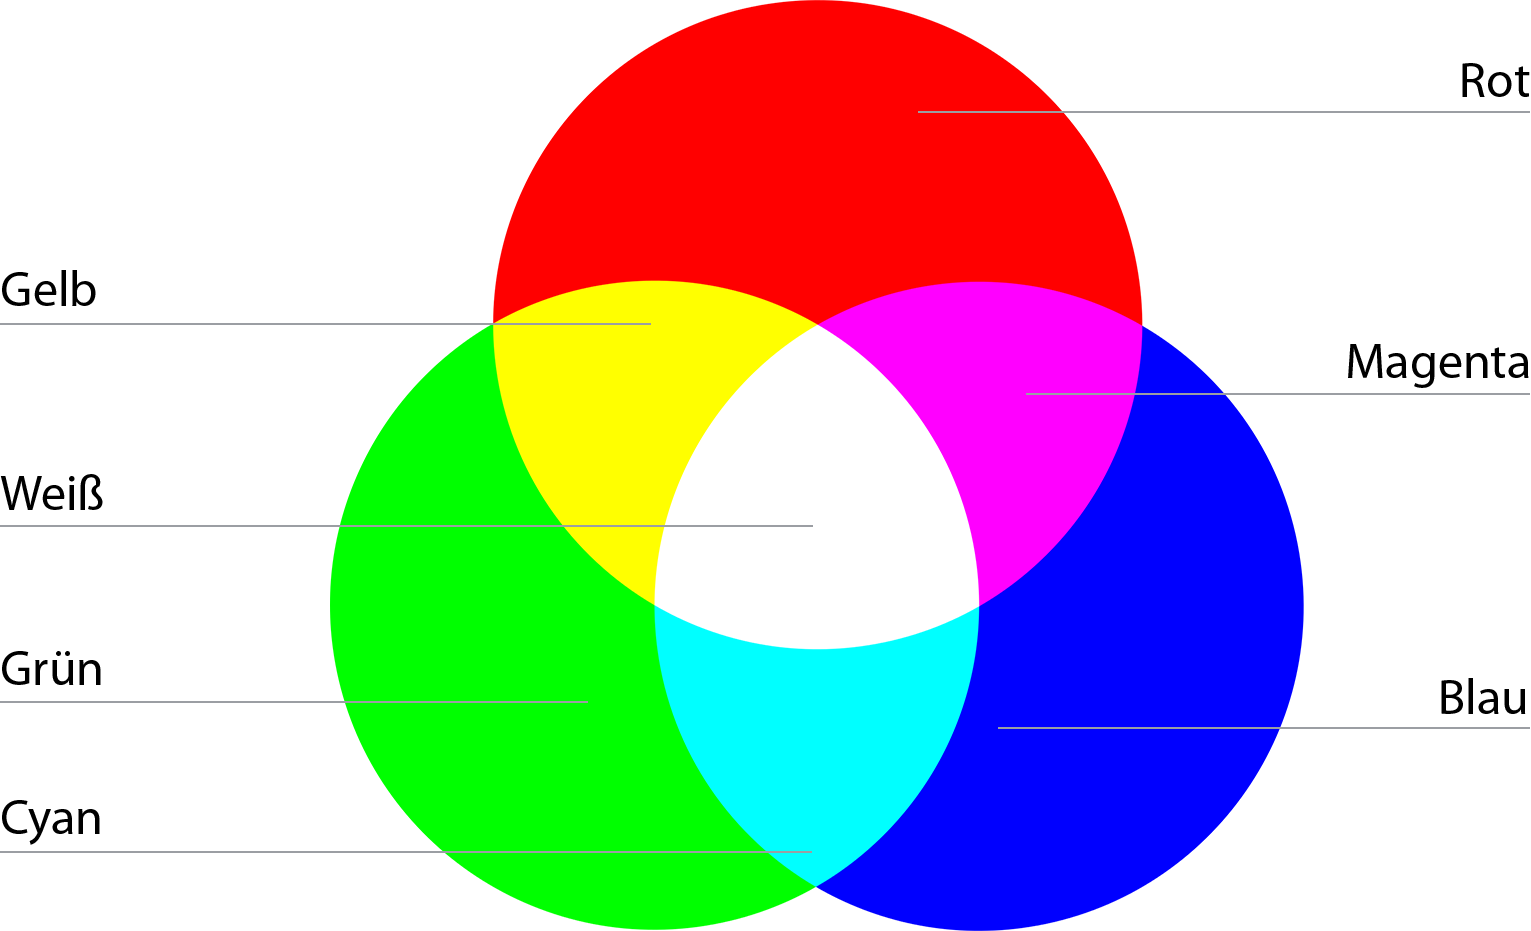 RGB-Farbmodell - einfach erklärt